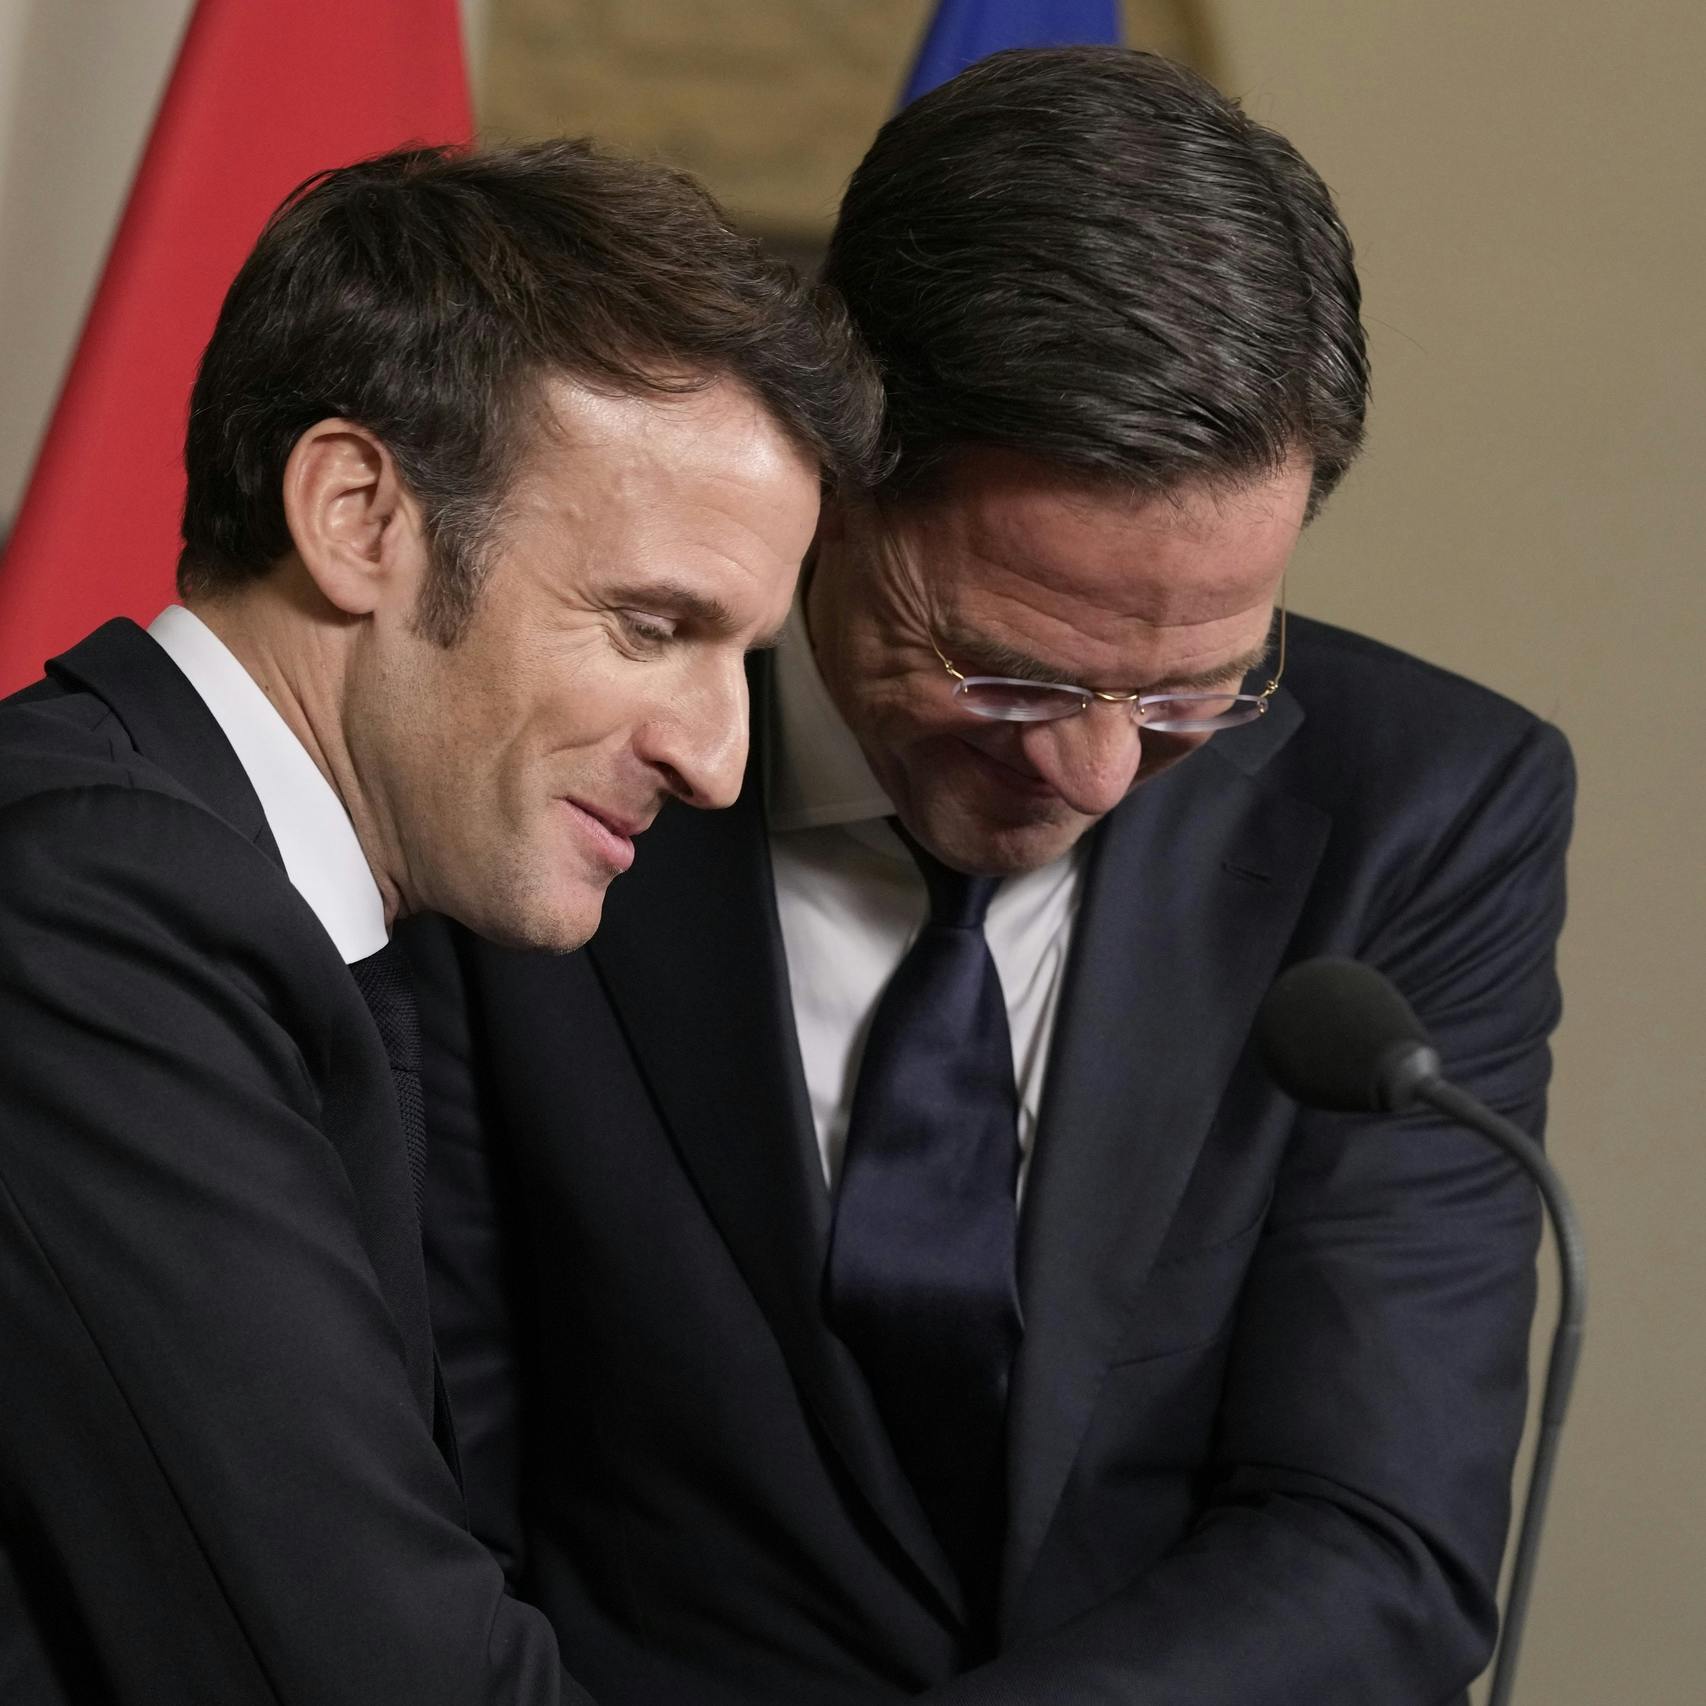 Nederland en Frankrijk zijn eensgezind: Europe first